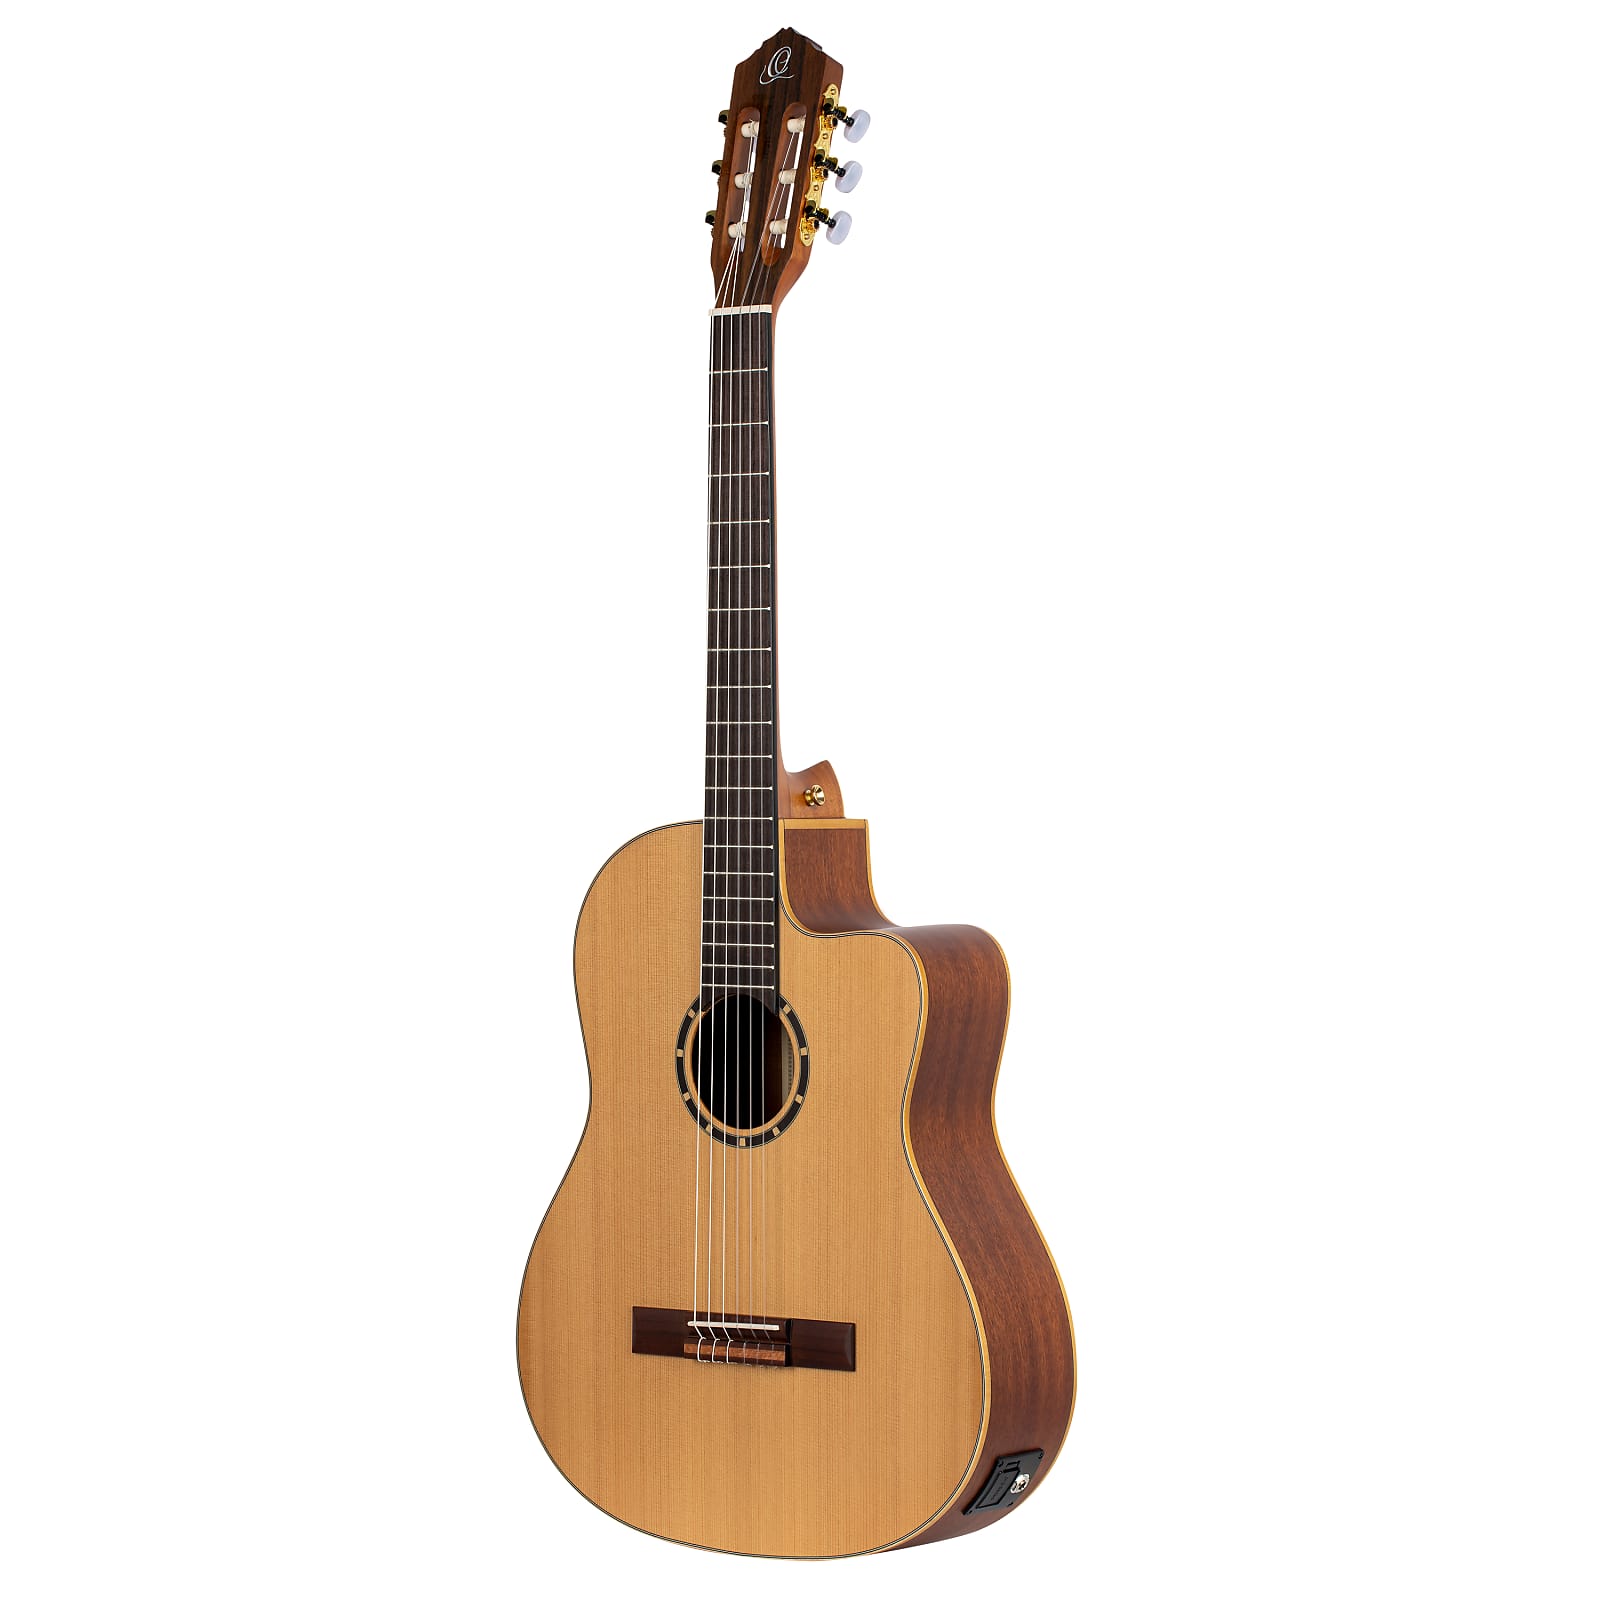 Ortega Family Pro Cedar Top Slim Neck Nylon Acoustic Electric Guitar RCE131SN w/Bag